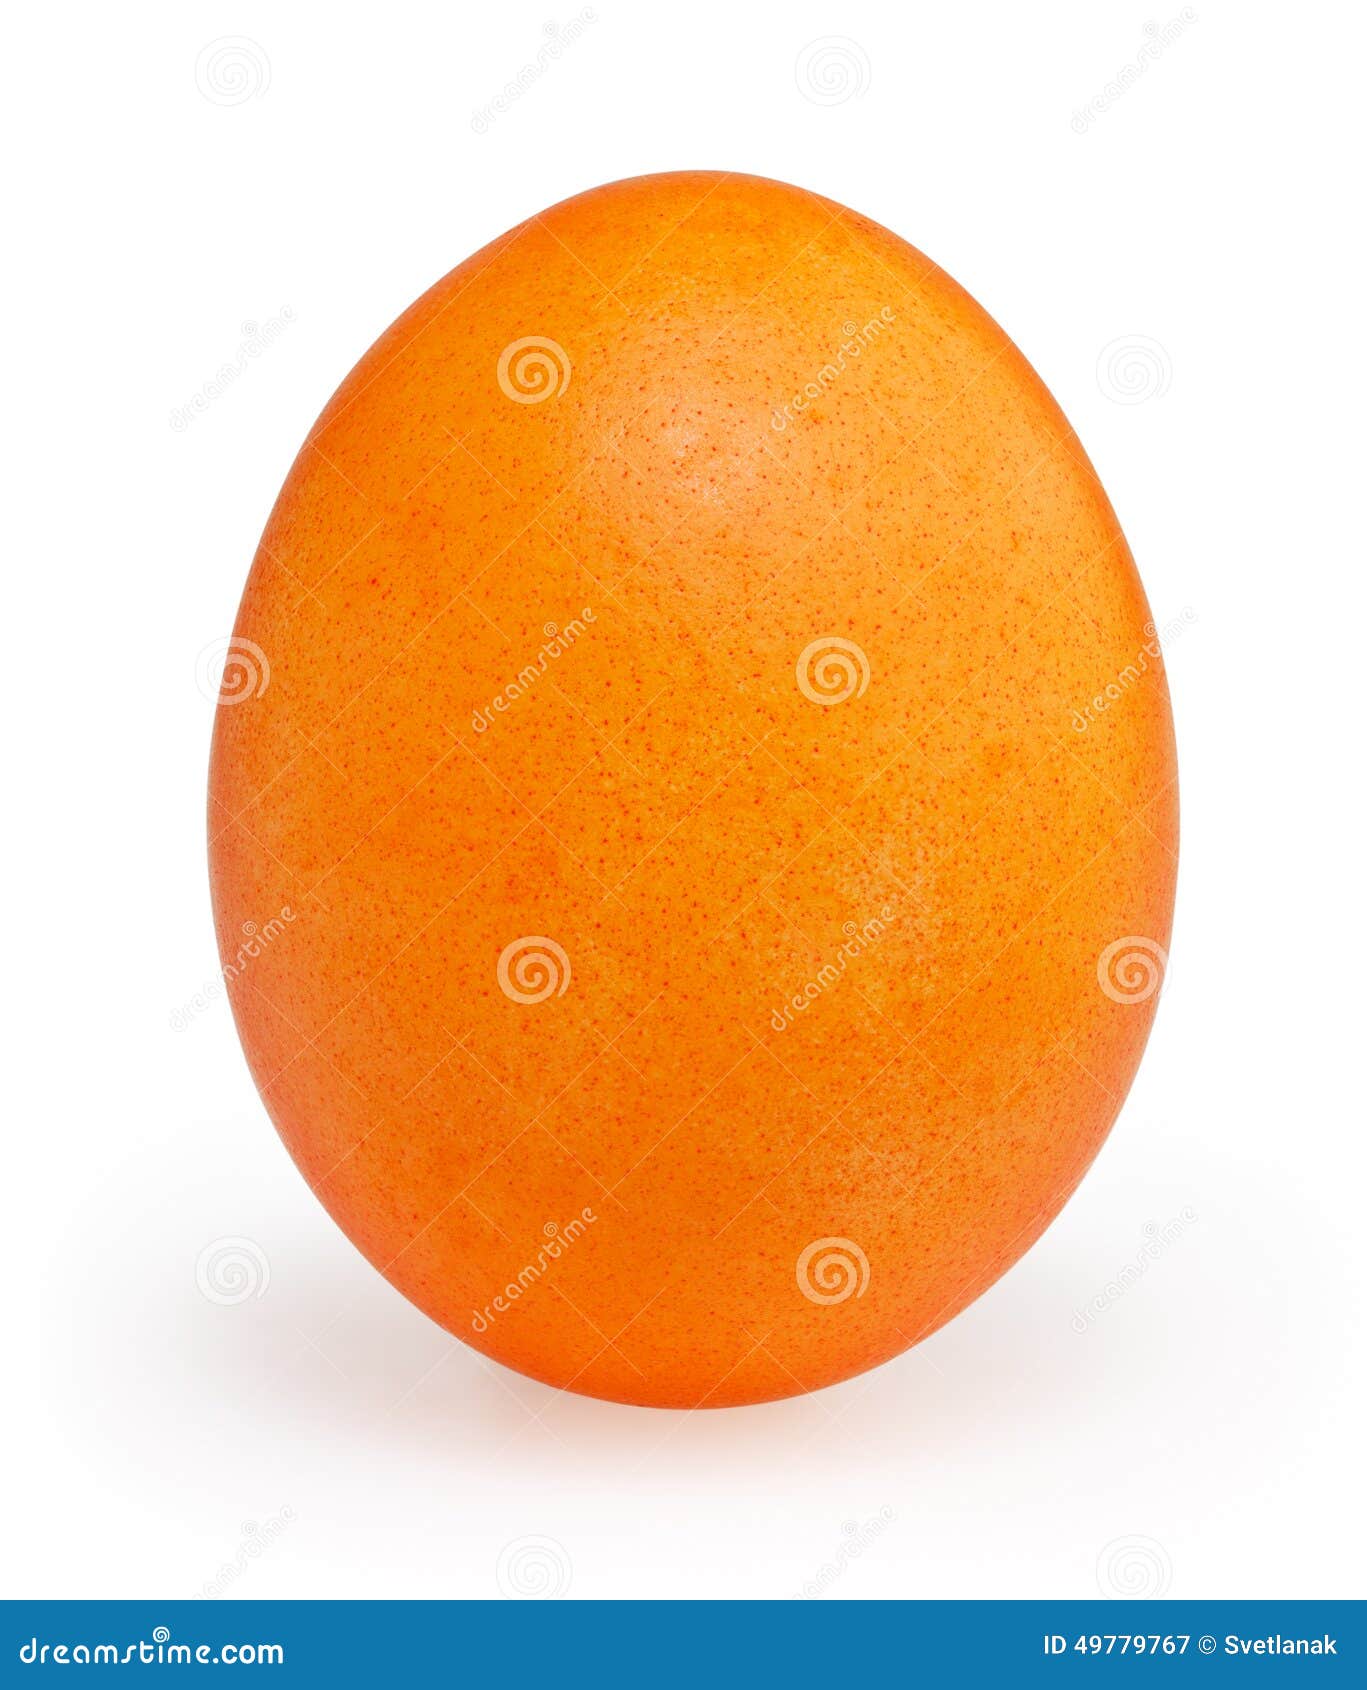 Почему яйцо оранжевое. Оранжевое яйцо. Пасхальные оранжевые яйца. Яйцо оранжевое на прозрачном фоне. Апельсиновое яйцо.